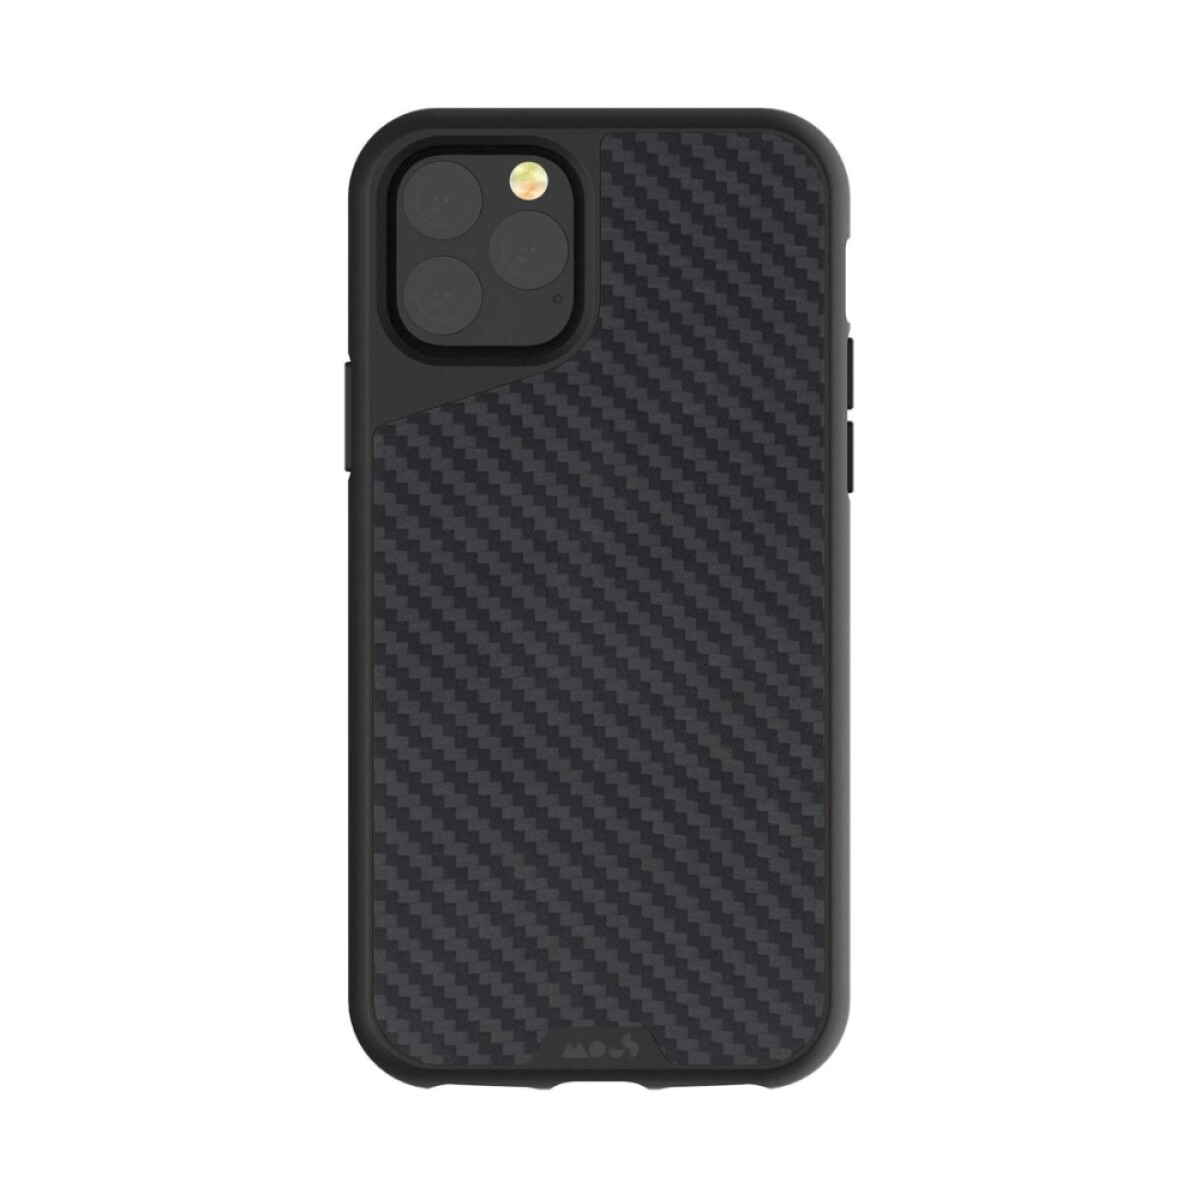 Mous case limitless 3.0 iphone 12 pro max - Fibra de carbono 